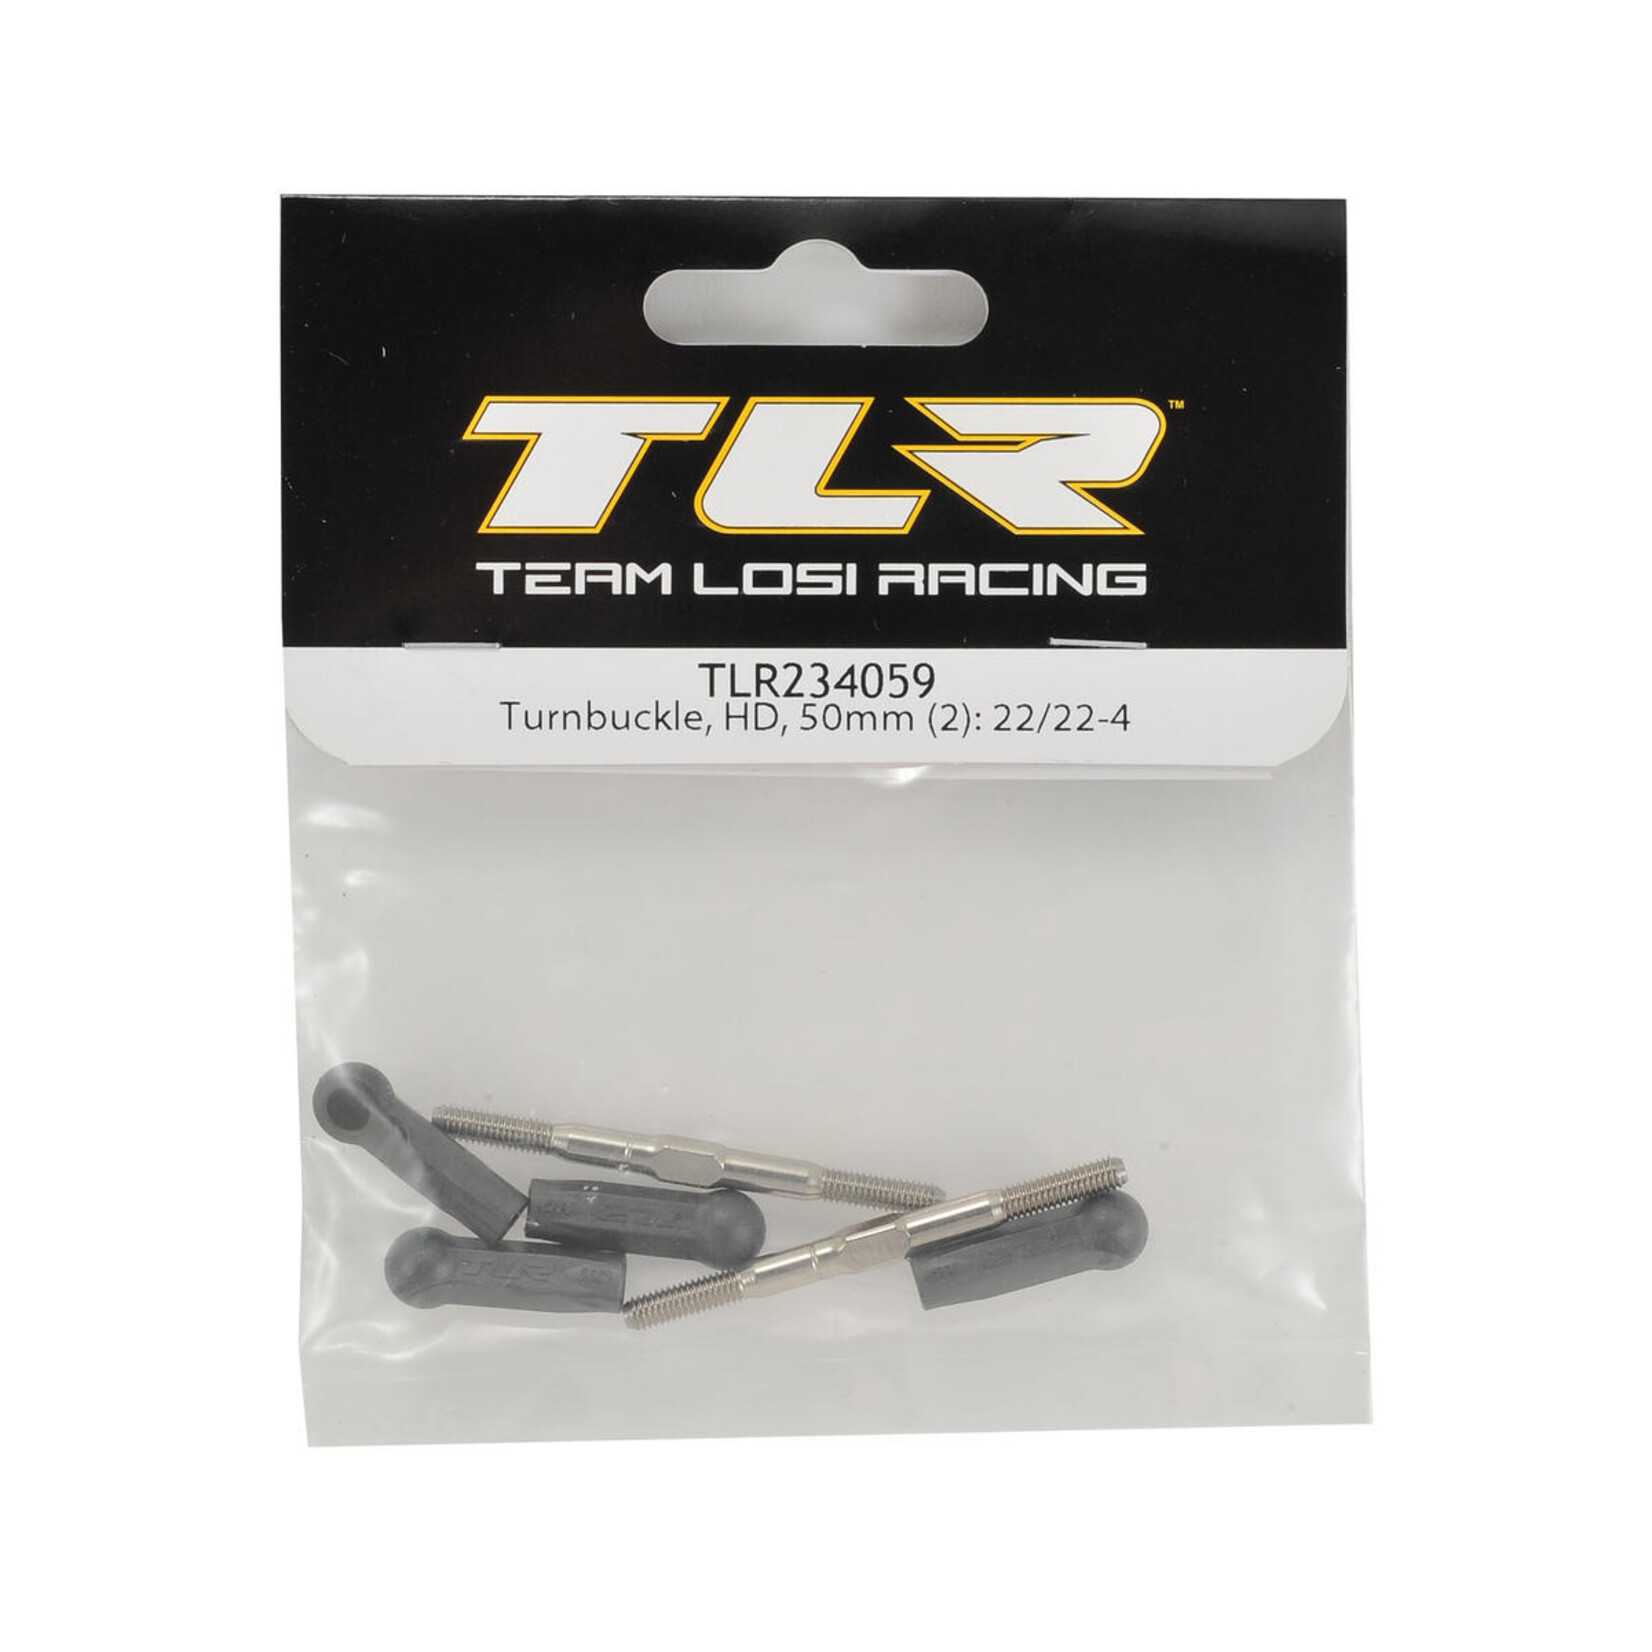 TLR TLR Turnbuckle, HD, 50mm (2): 22/22-4 #TLR234059